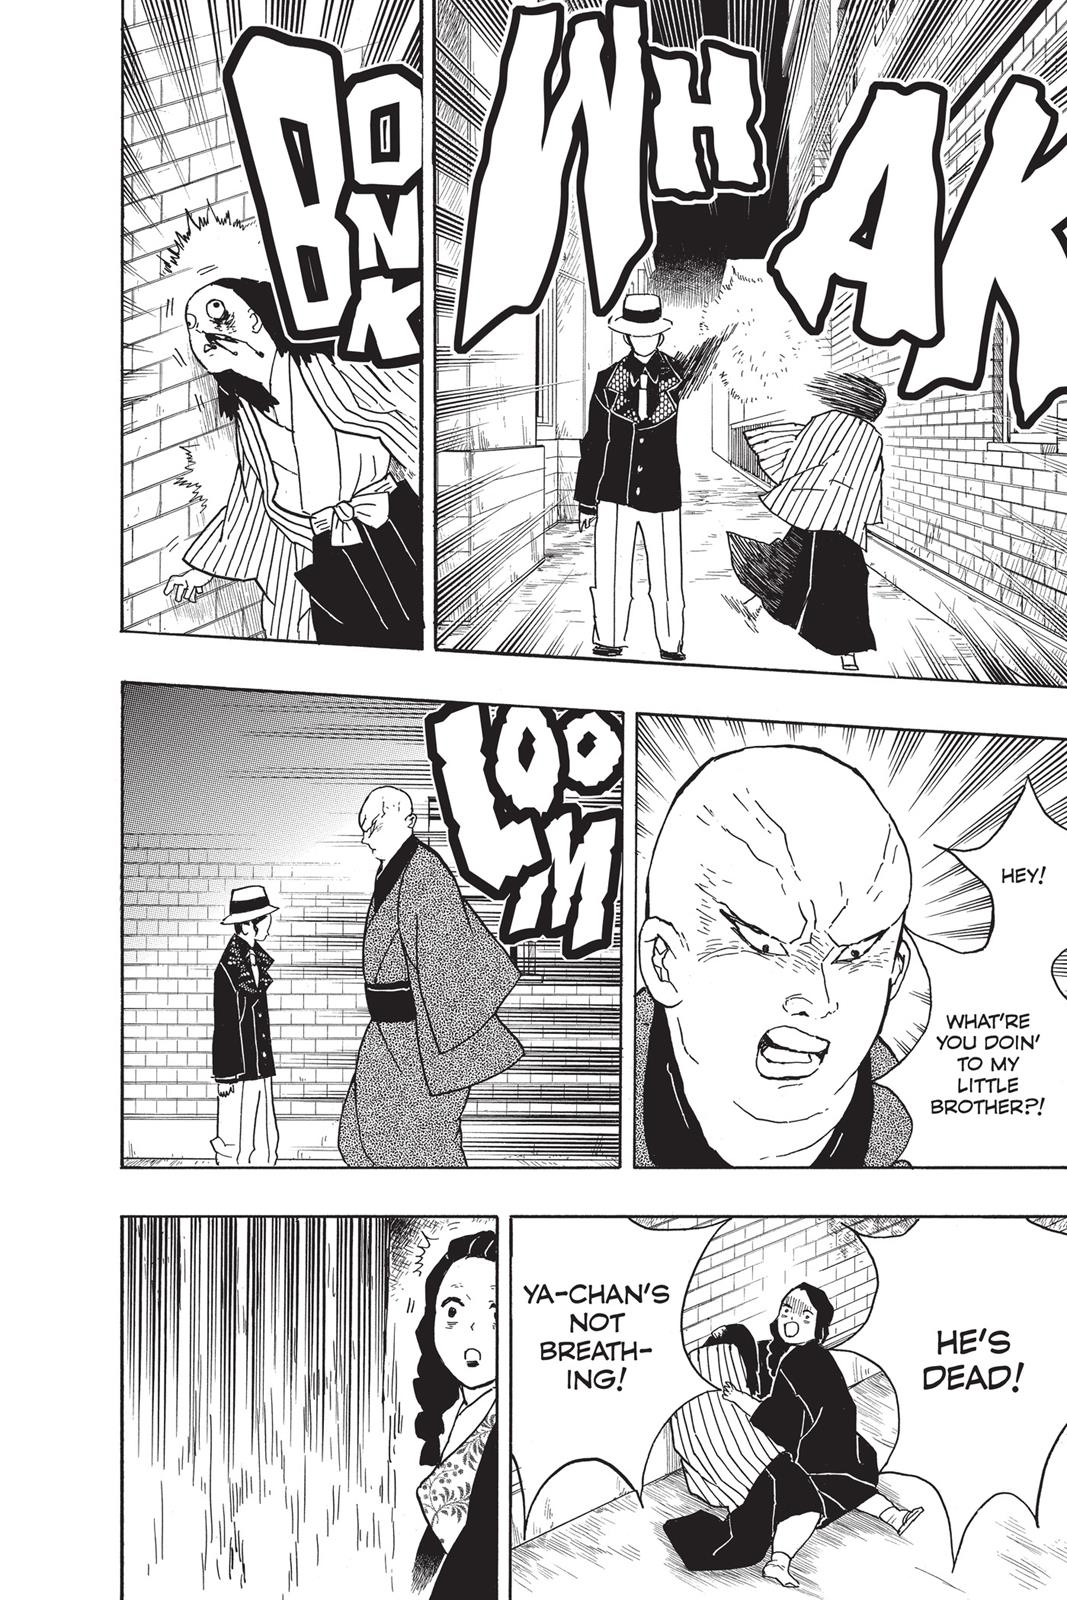 Demon Slayer Manga Manga Chapter - 14 - image 14